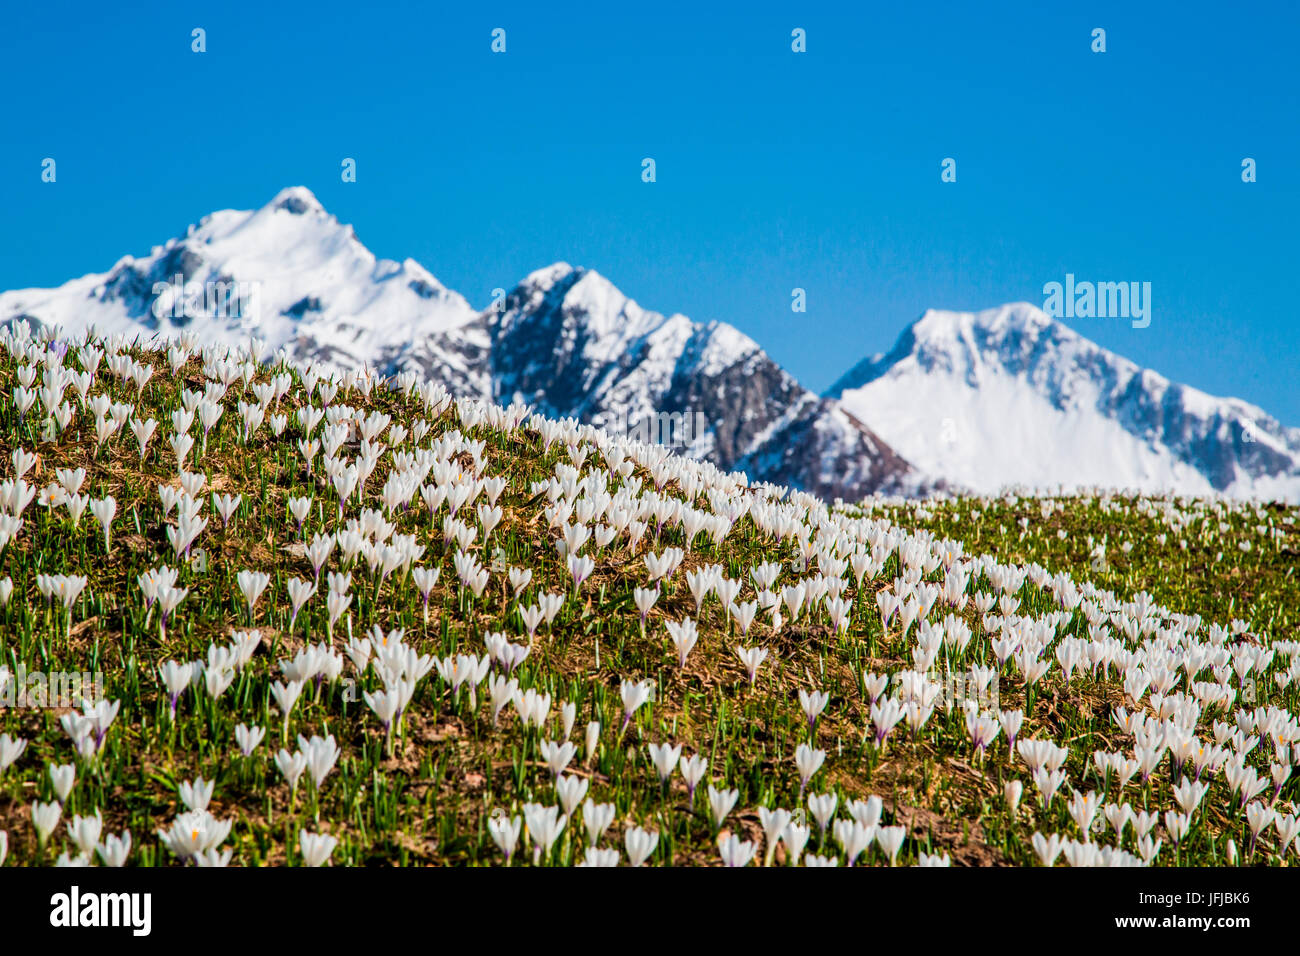 Die grünen Felder und Blumen kontrastiert mit den schneebedeckten Gipfeln der Bitto Tal, Alpen Orobie Valtellina, Lombardei, Italien, Europa Stockfoto